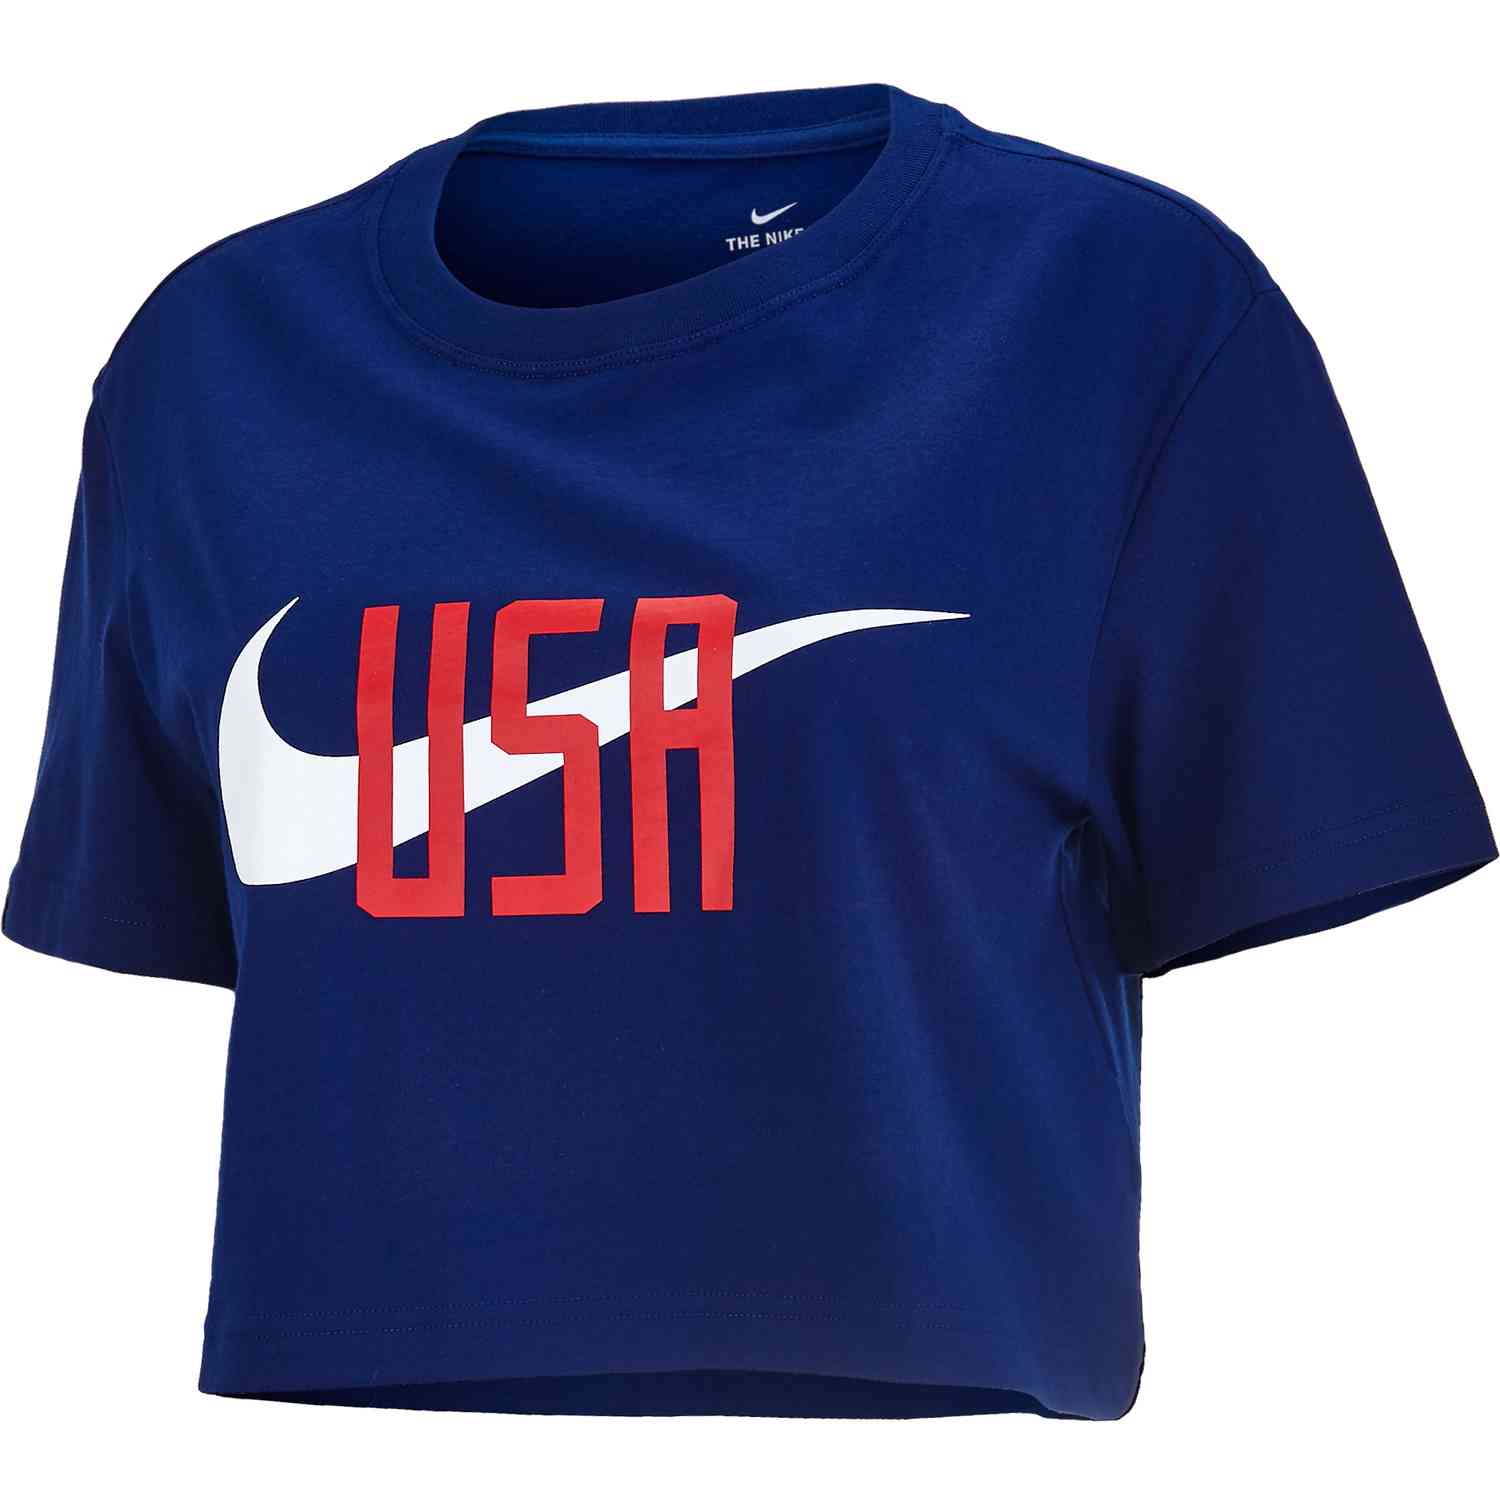 Nike U.S. Soccer Women's T-Shirt